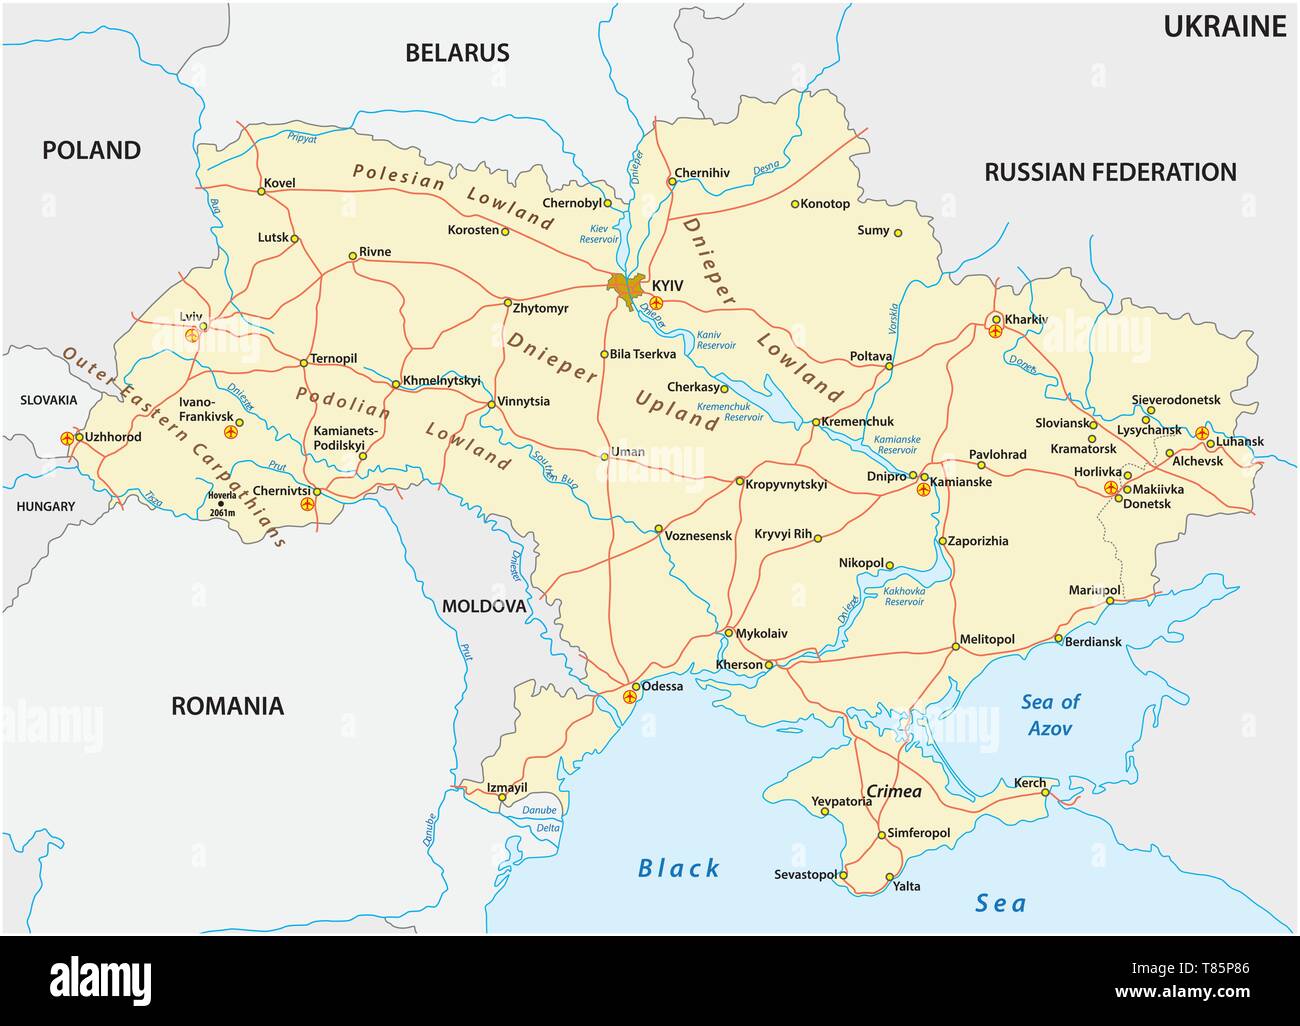 Detaillierte farbige Vektor road map der Ukraine Stock Vektor